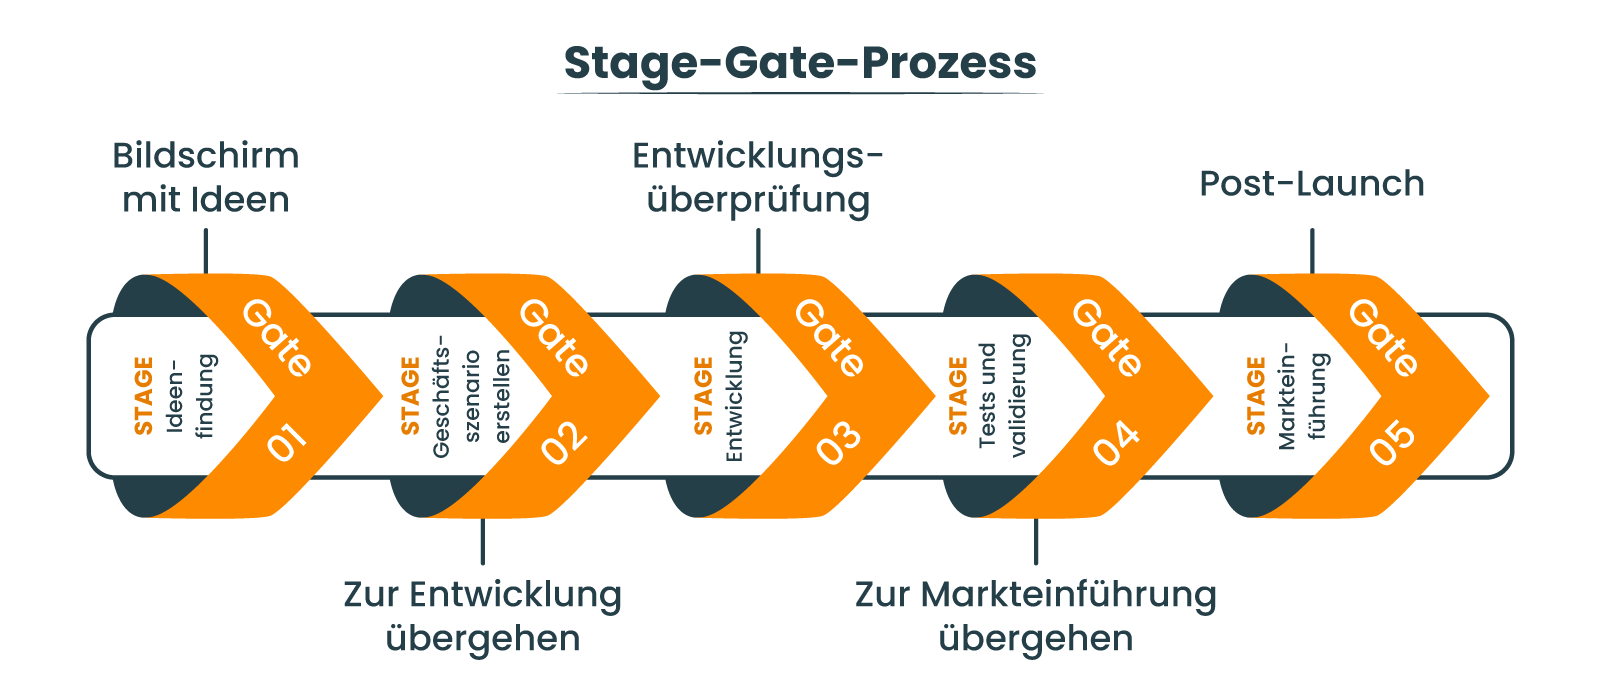 Die Rolle der Stage-Gate-Methodik in der NPD